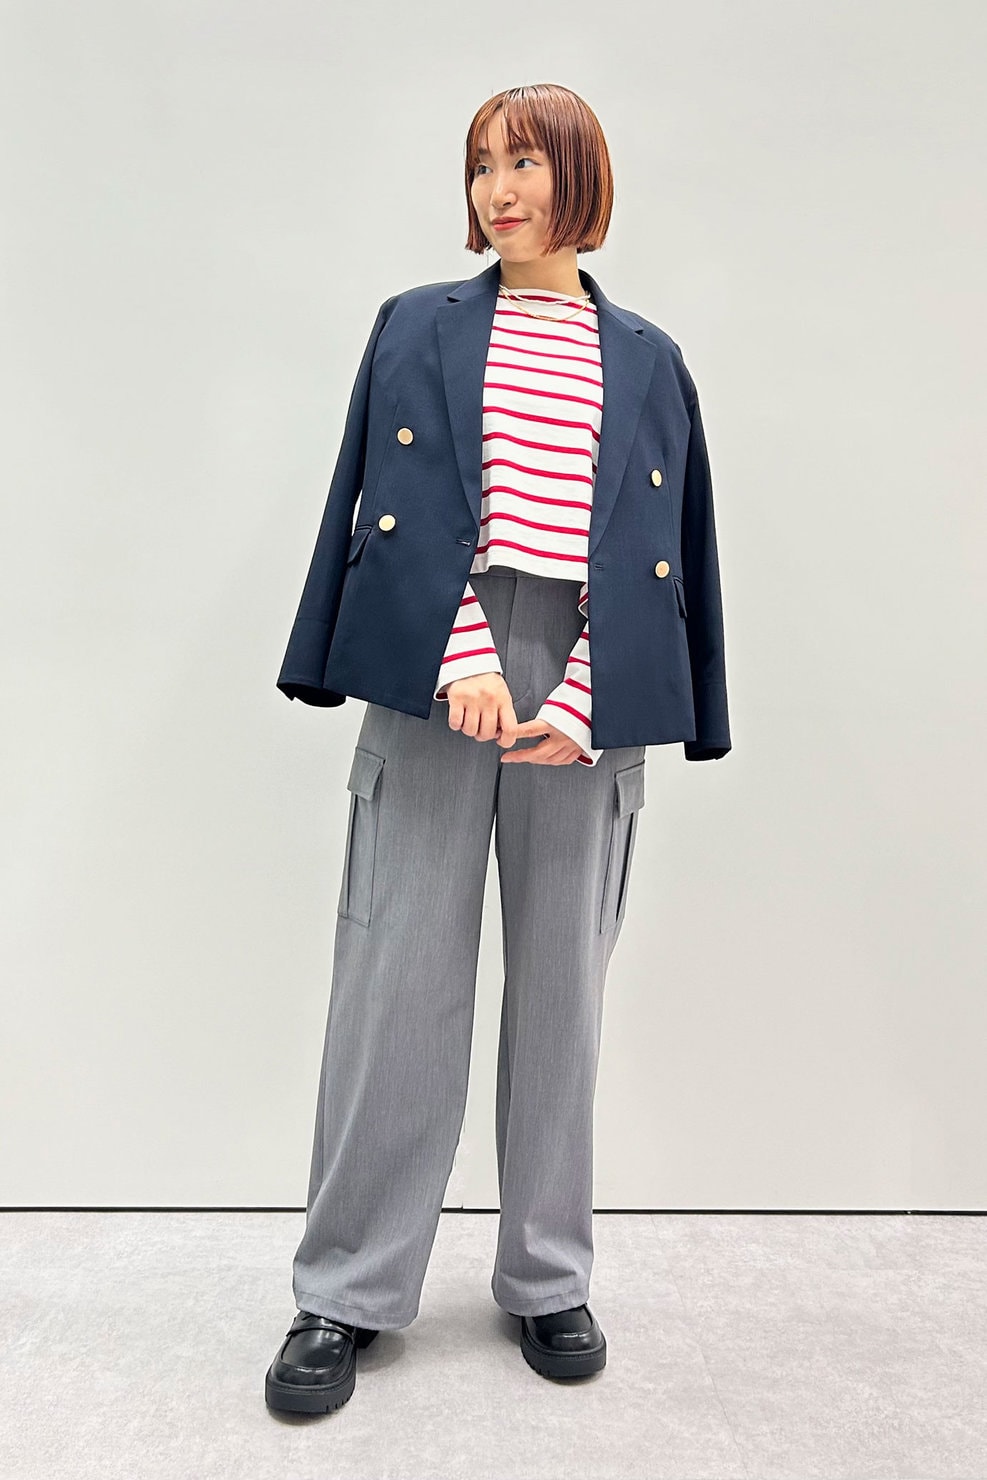 ロペピクニック プレス 柚木愛理さんの私服ファッションスナップ。赤ボーダーとパール風ネックレスでフレンチシックに